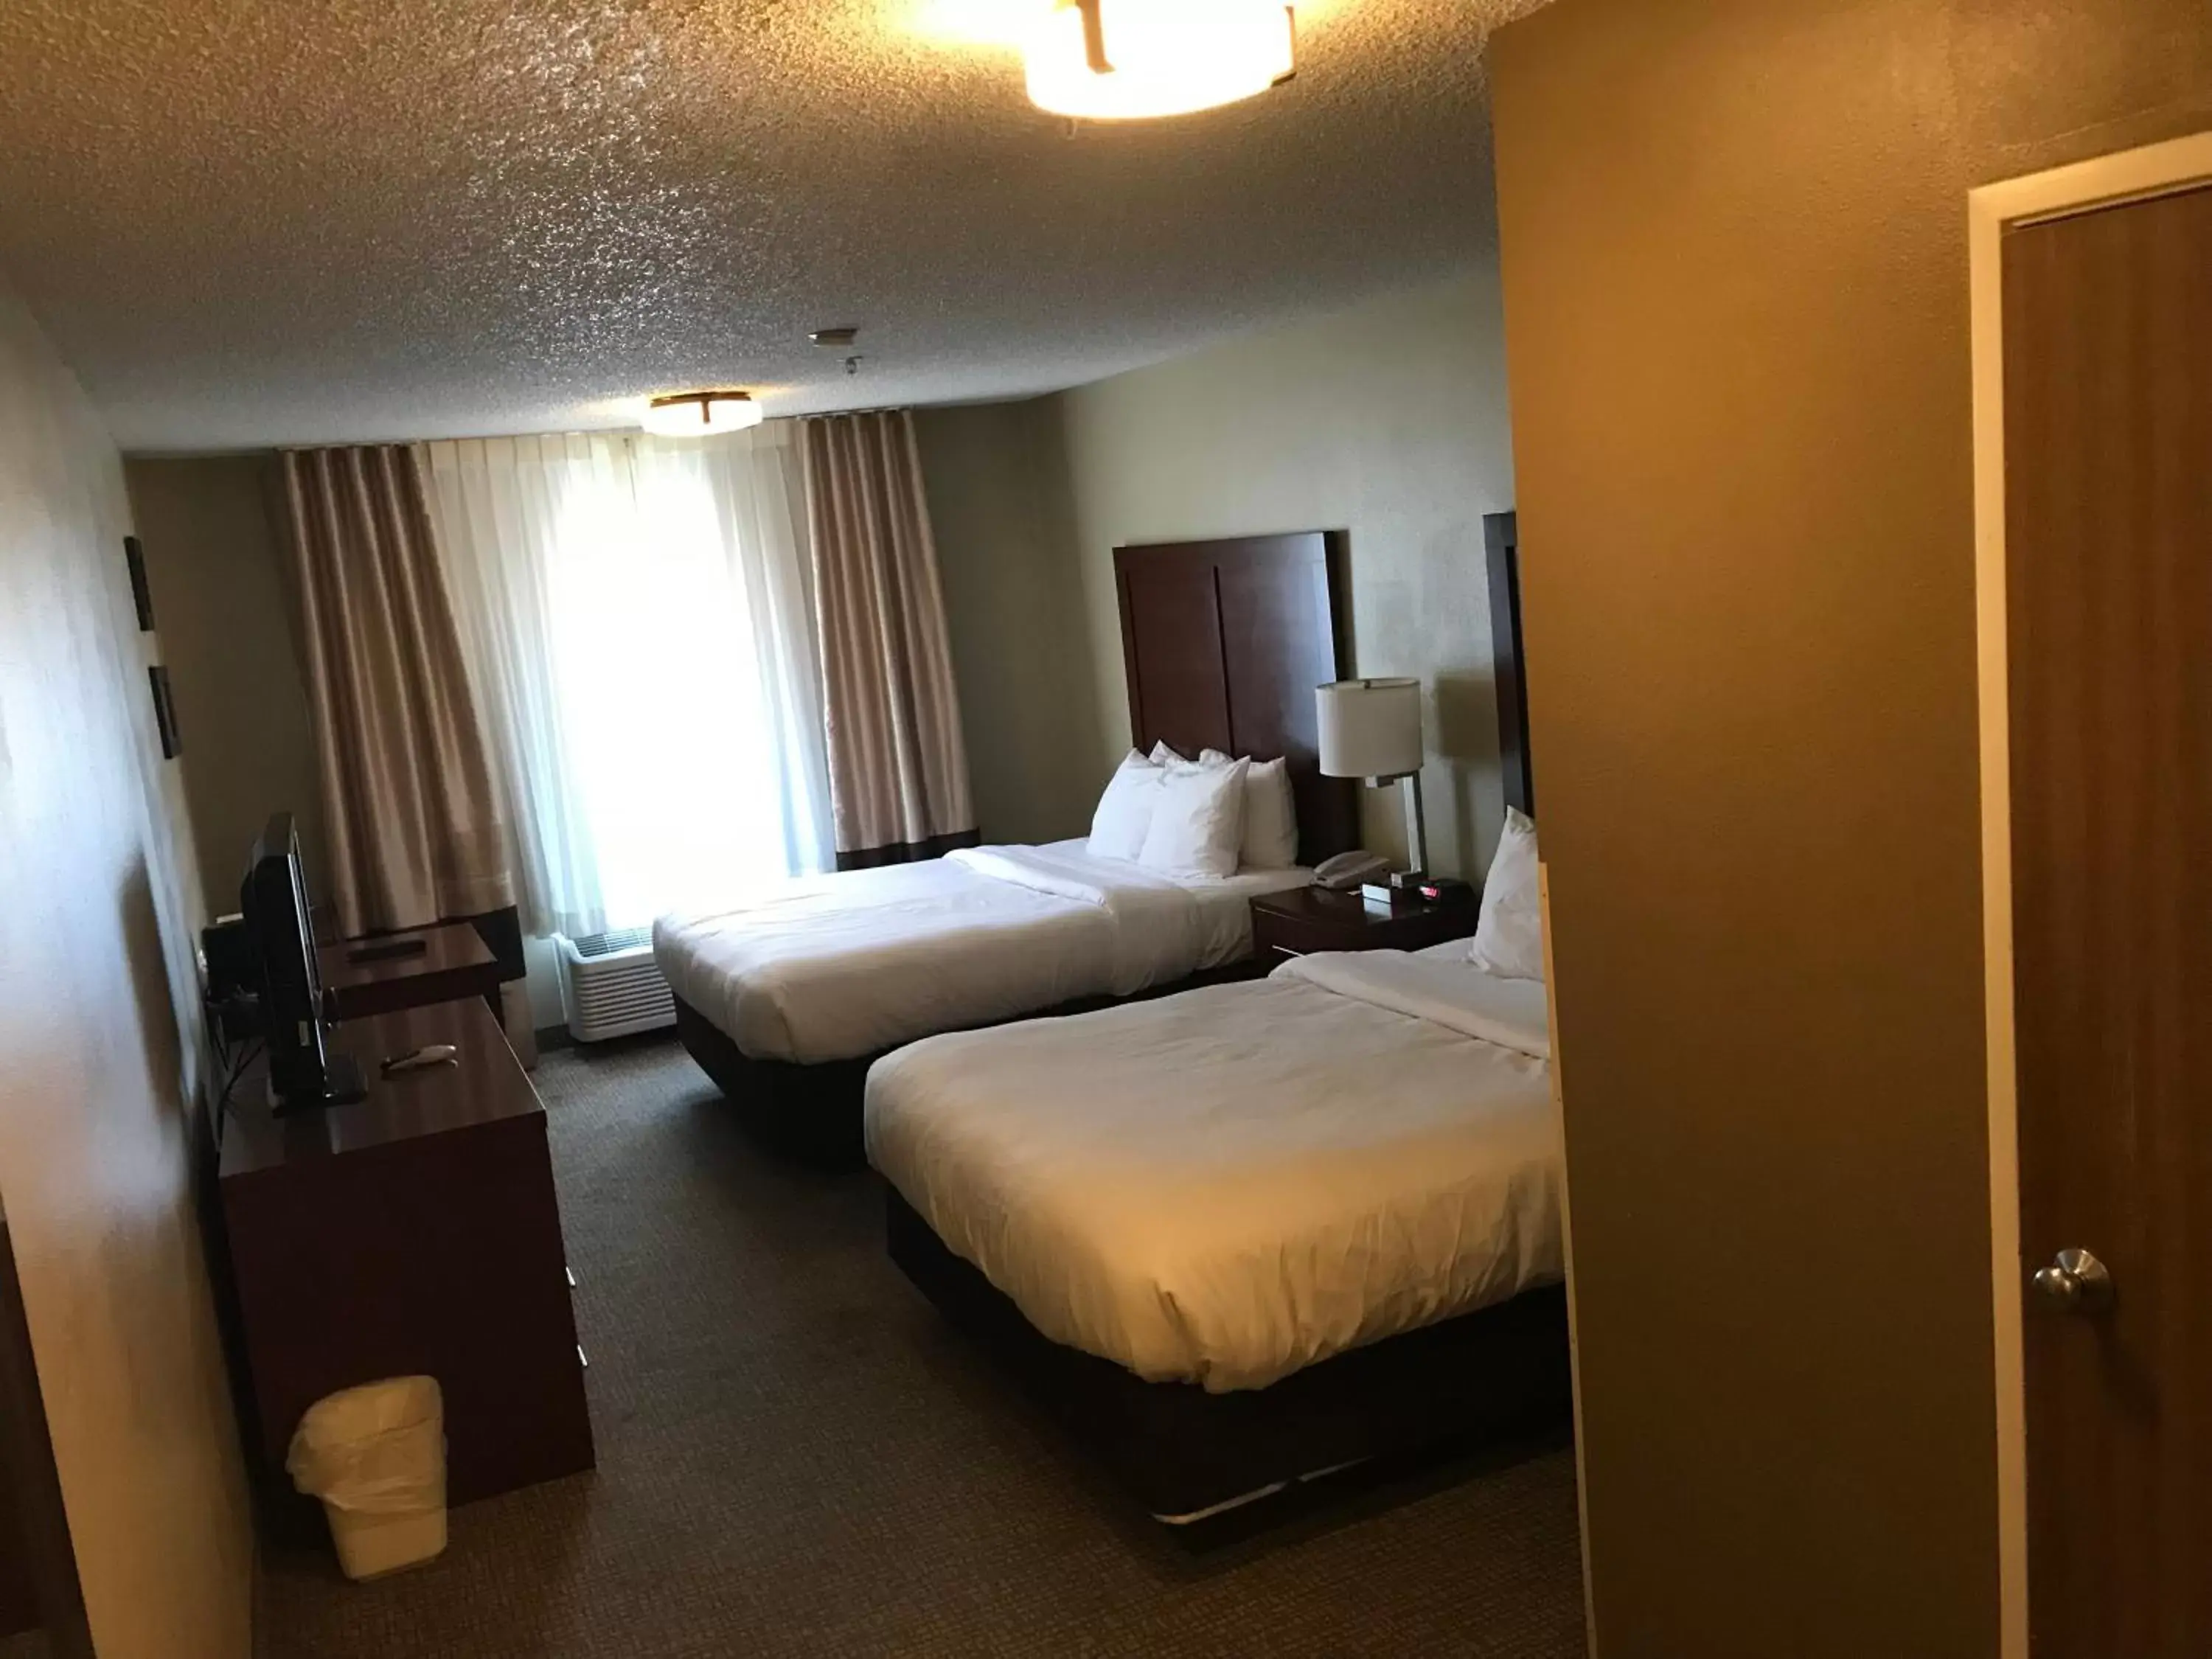 Bedroom, Bed in Comfort Inn Idaho Falls